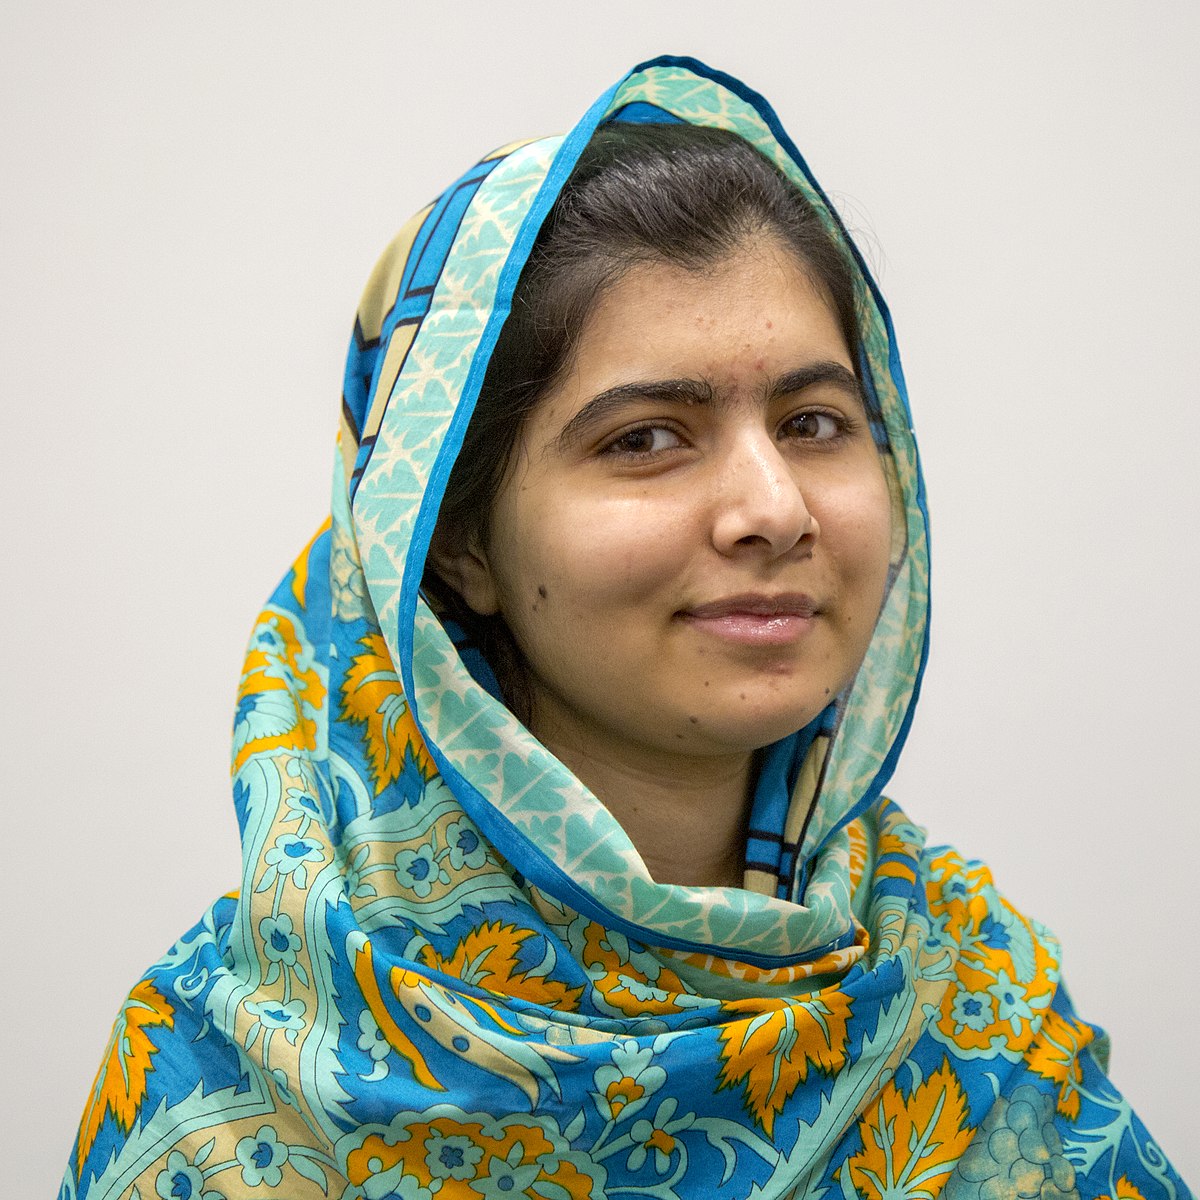 La UCO publica un artículo sobre la investigación de Malala llevada a cabo en las aulas infantiles